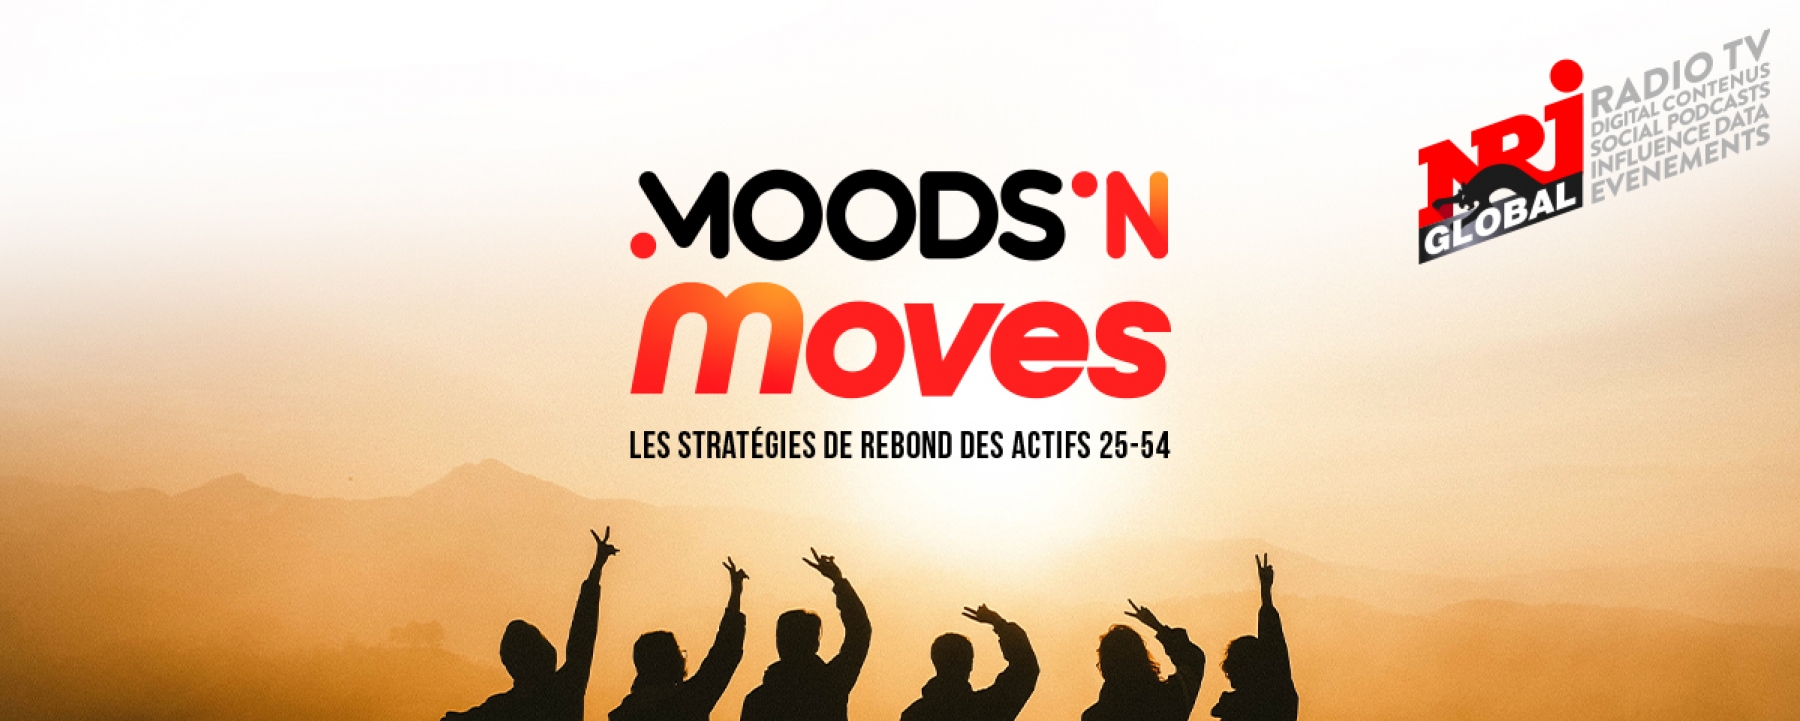 Moods’n Moves, les stratégies de rebond des Actifs 25-54 ans, un événement organisé par NRJ le 16 décembre